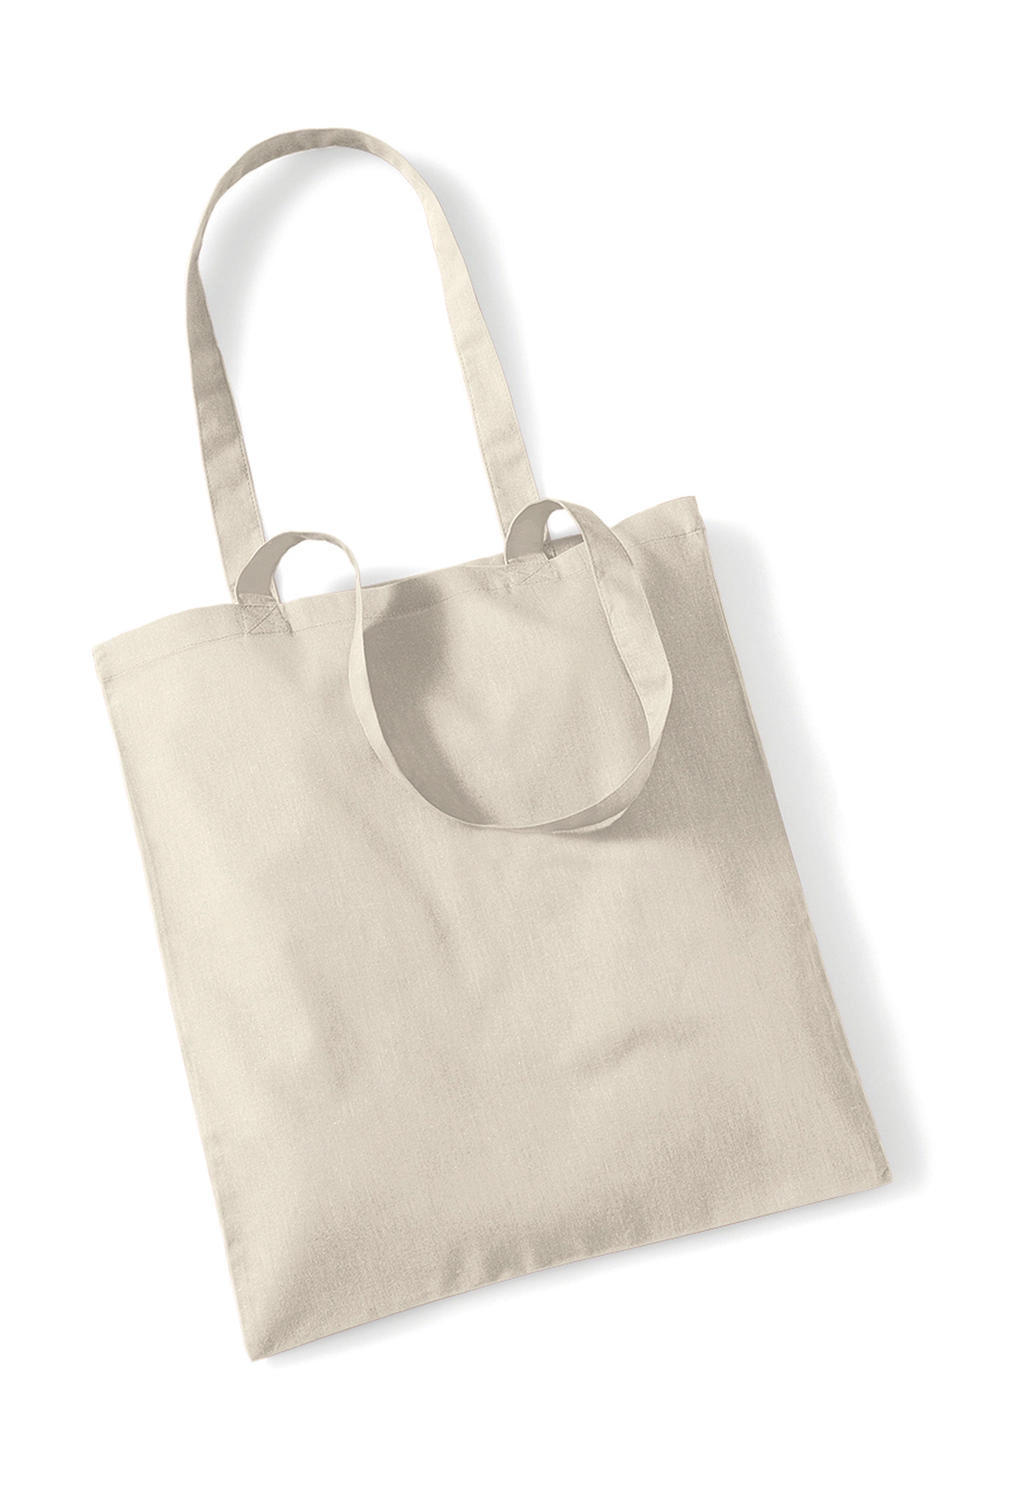 Bag for Life - Long Handles zum Besticken und Bedrucken in der Farbe Sand mit Ihren Logo, Schriftzug oder Motiv.